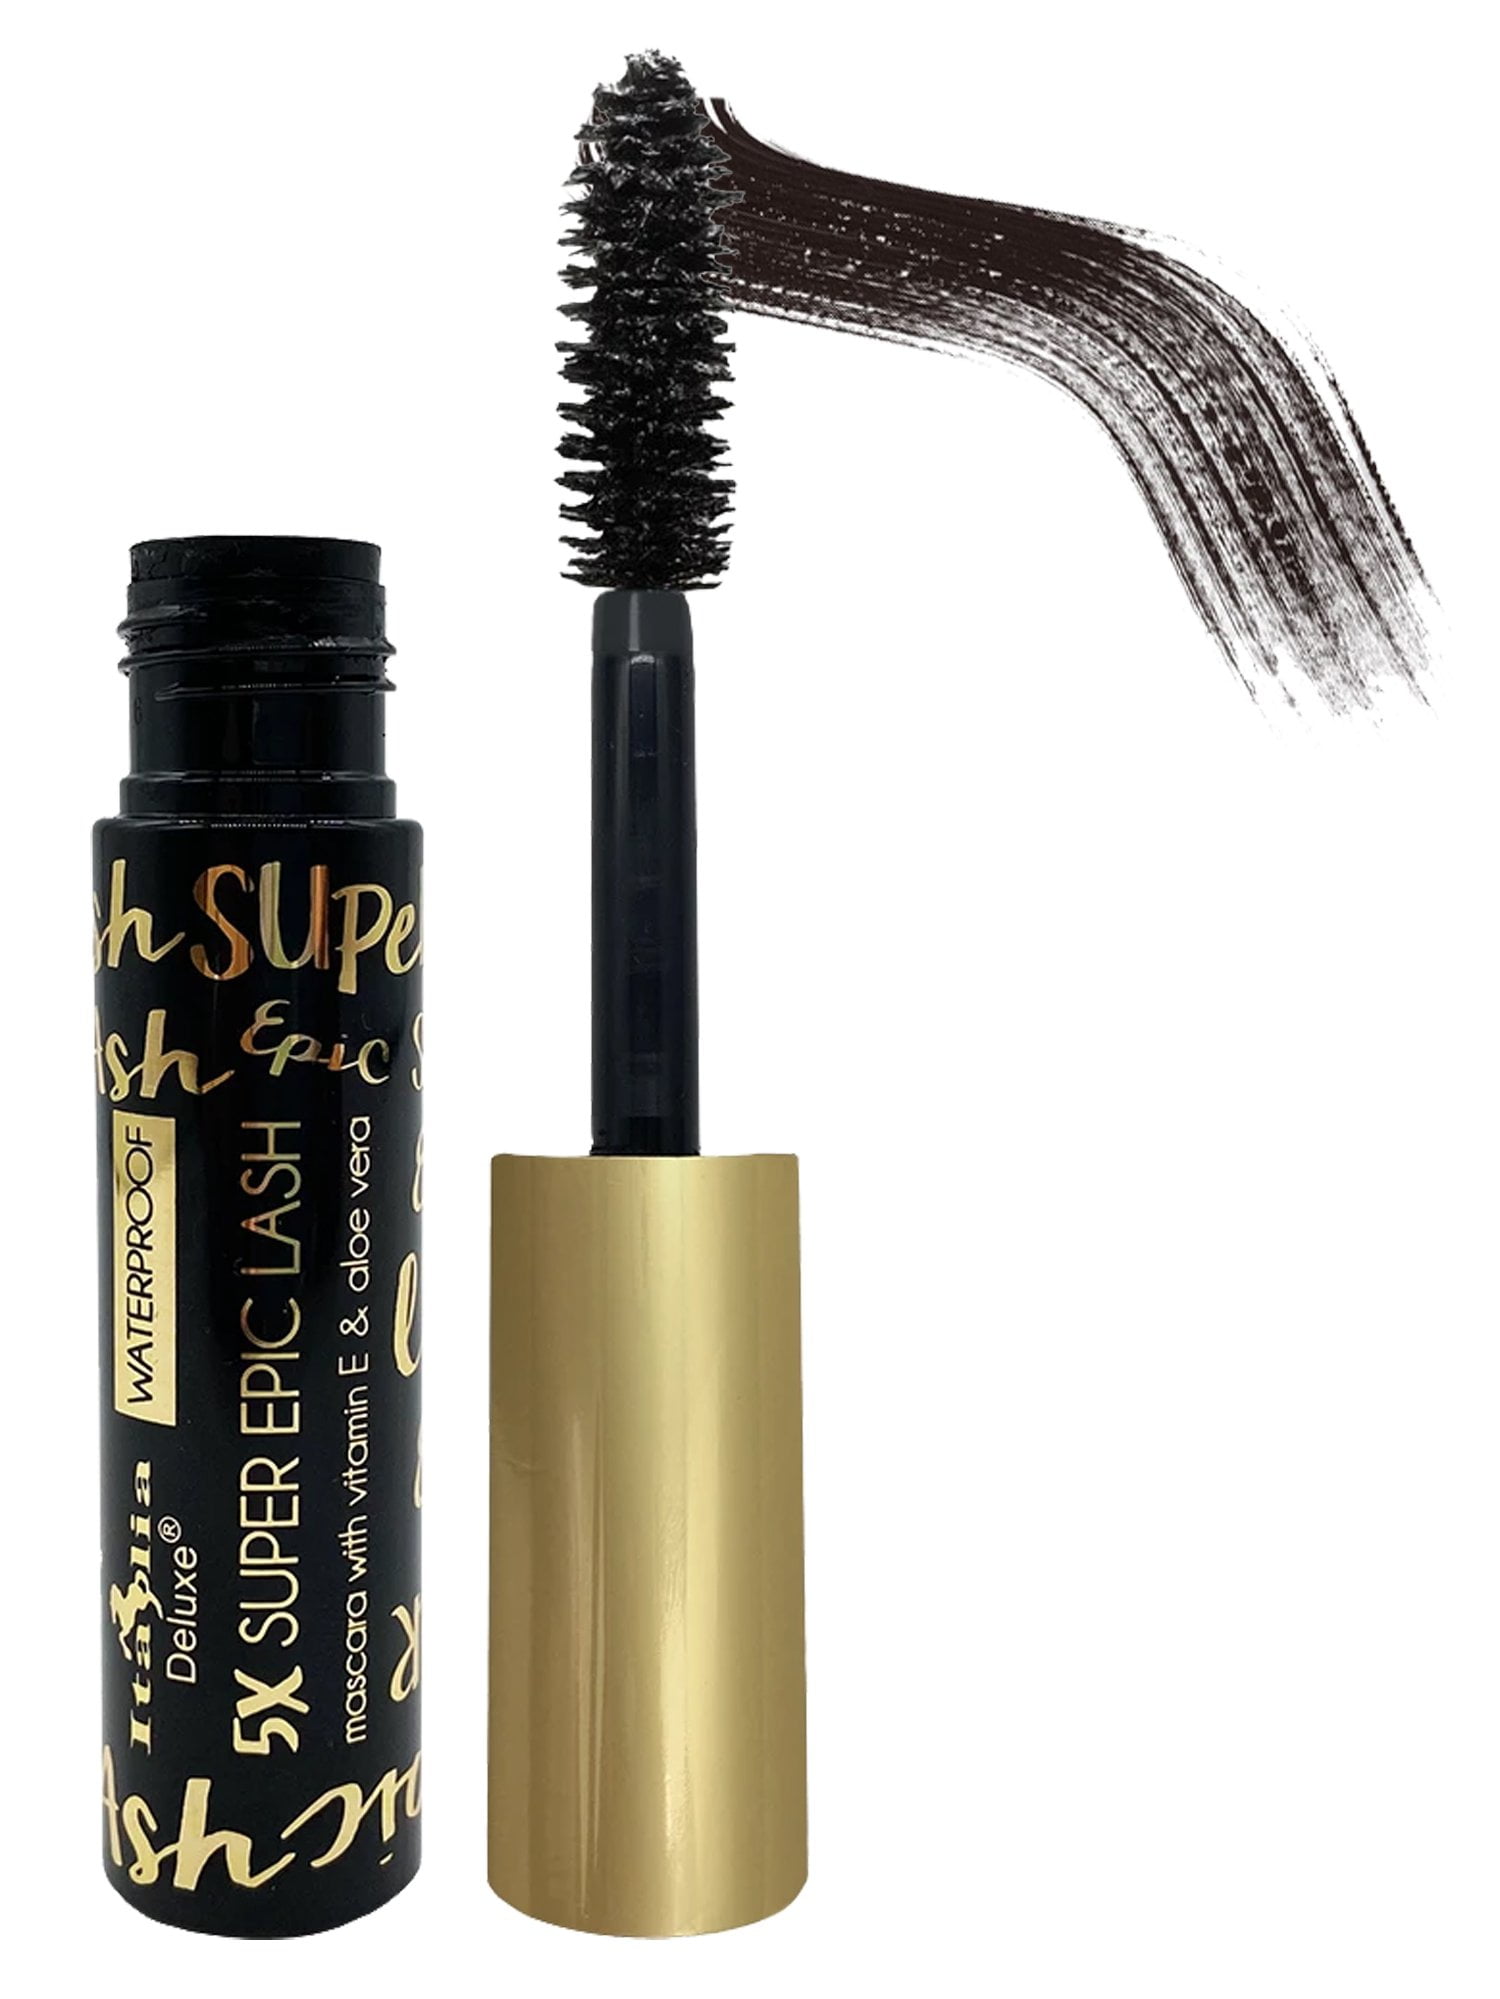 5X Super Epic Mascara Italia Enriched with Aloe & Vitamin-E (Black) - Walmart.com